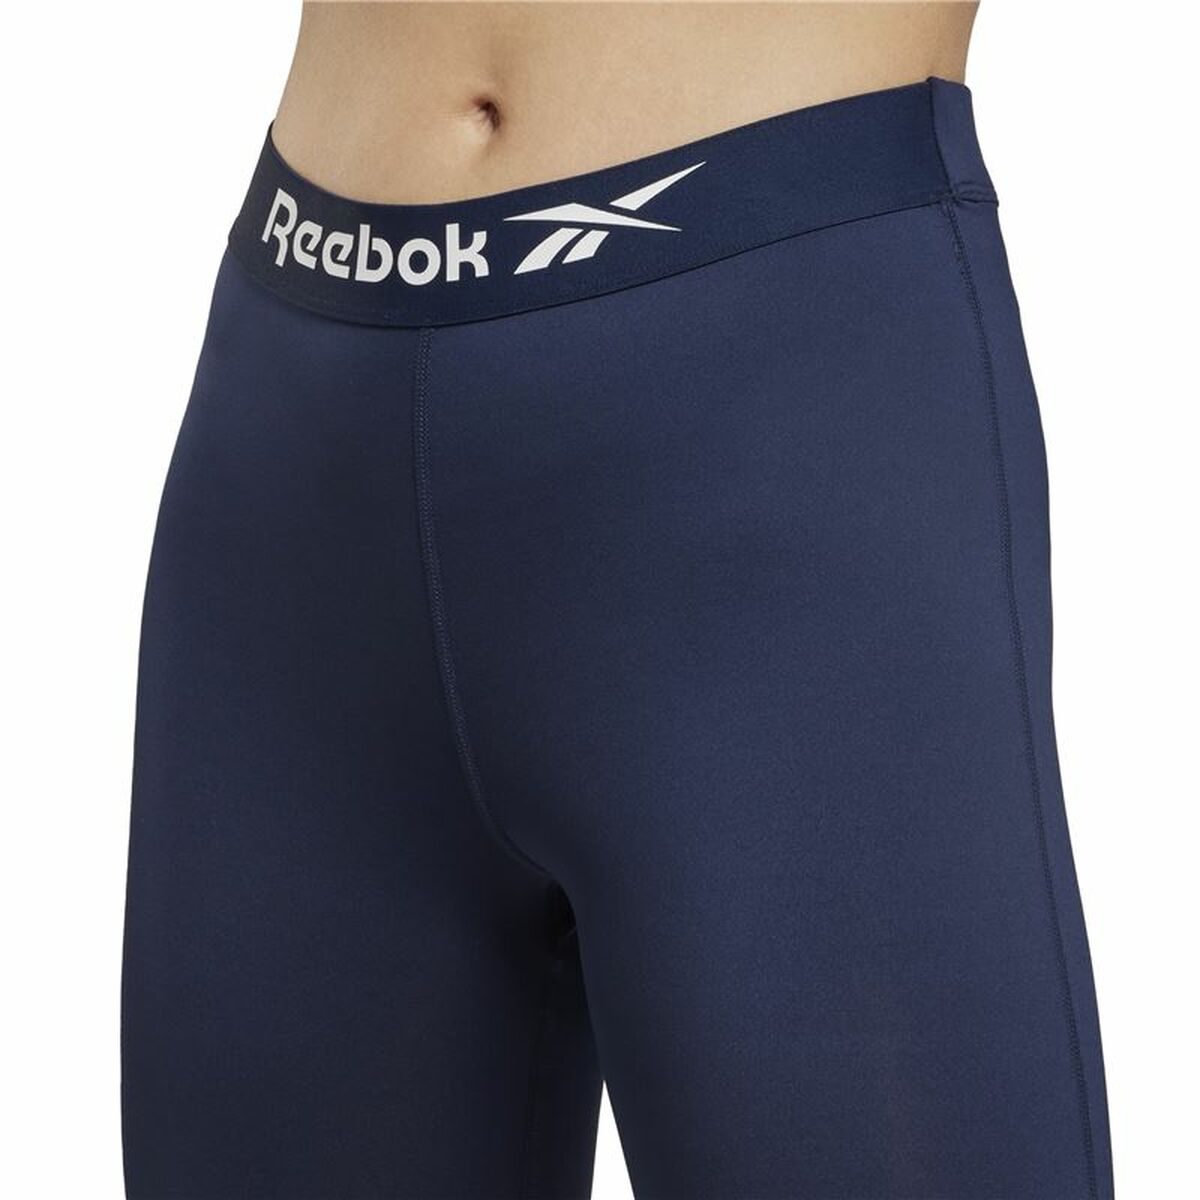 Sport leggings for Women Reebok Workout Ready Navy Blue